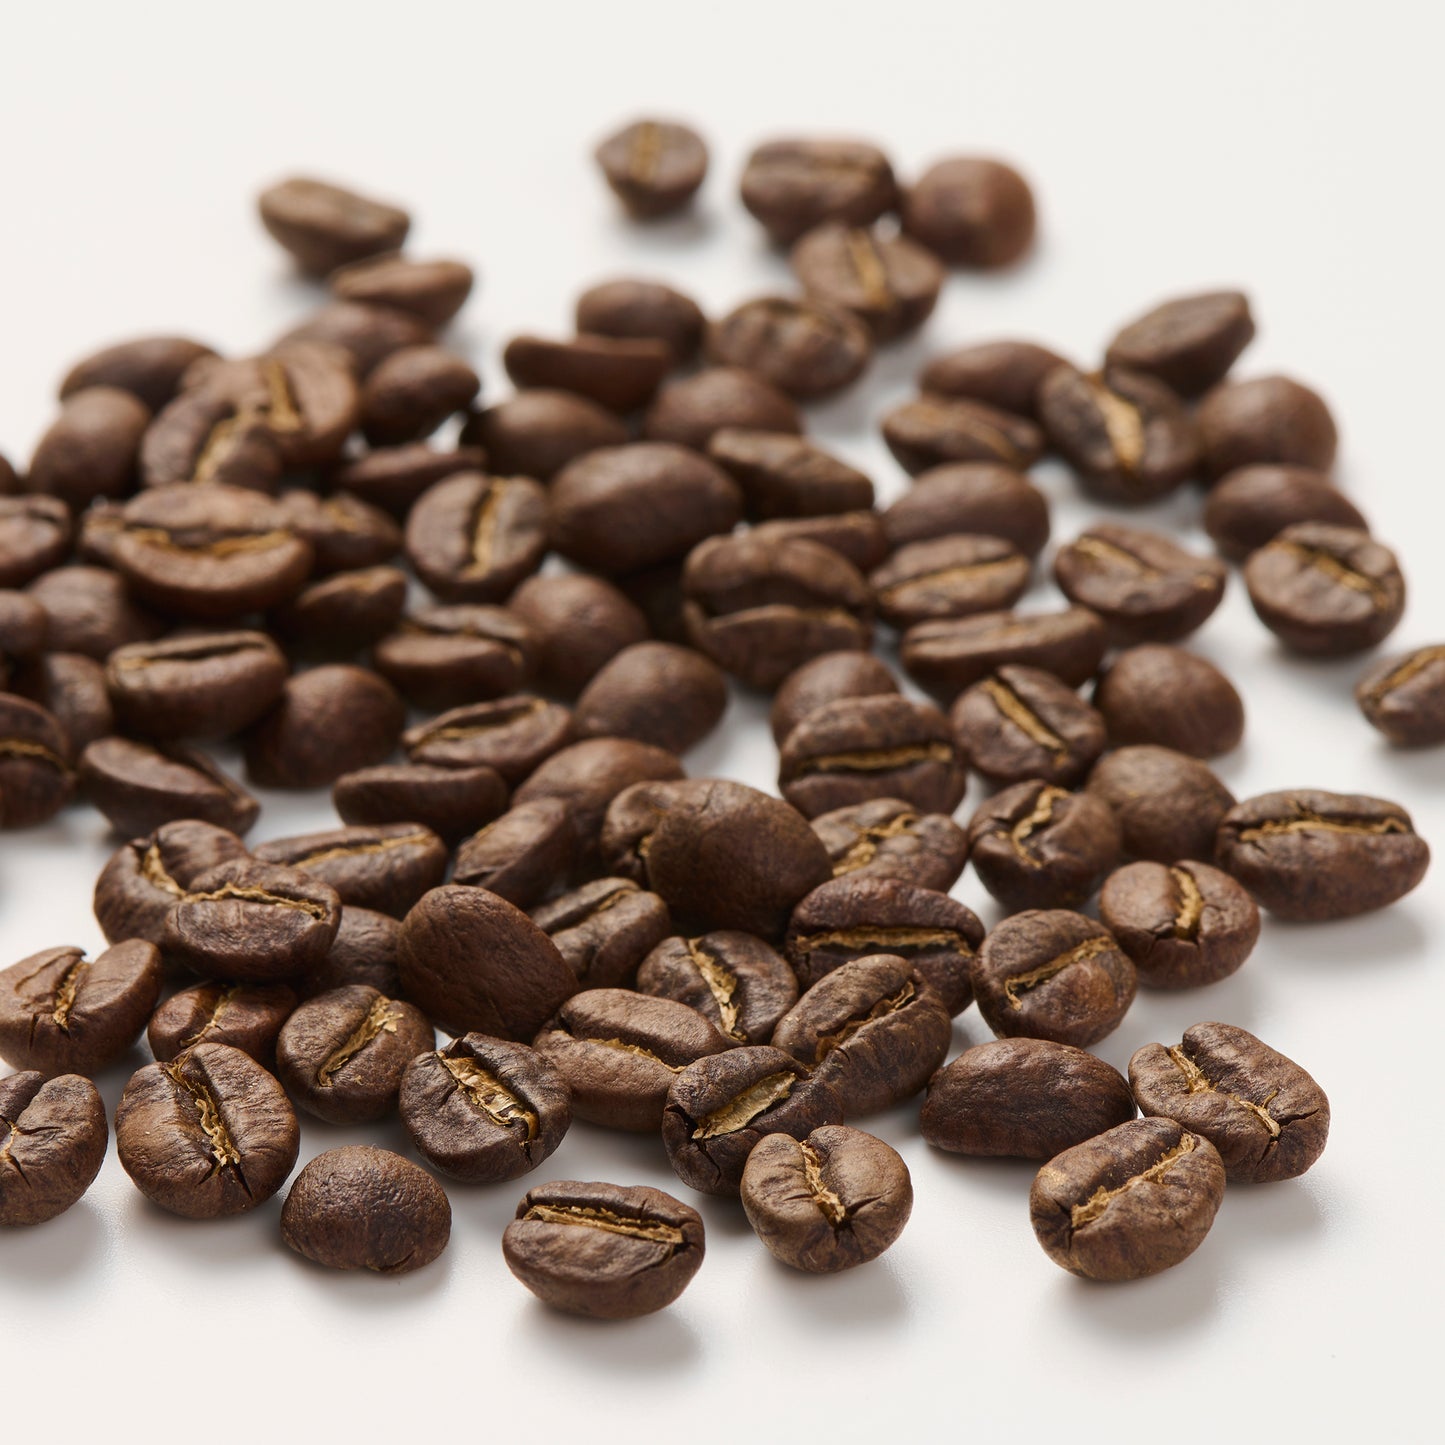 【オープンSALE15%OFF】COFFEE & Nuts トライアルセット (NGORO NGORO COFFEE 100g×3,THE HILLS Salt30g,Honey30g)